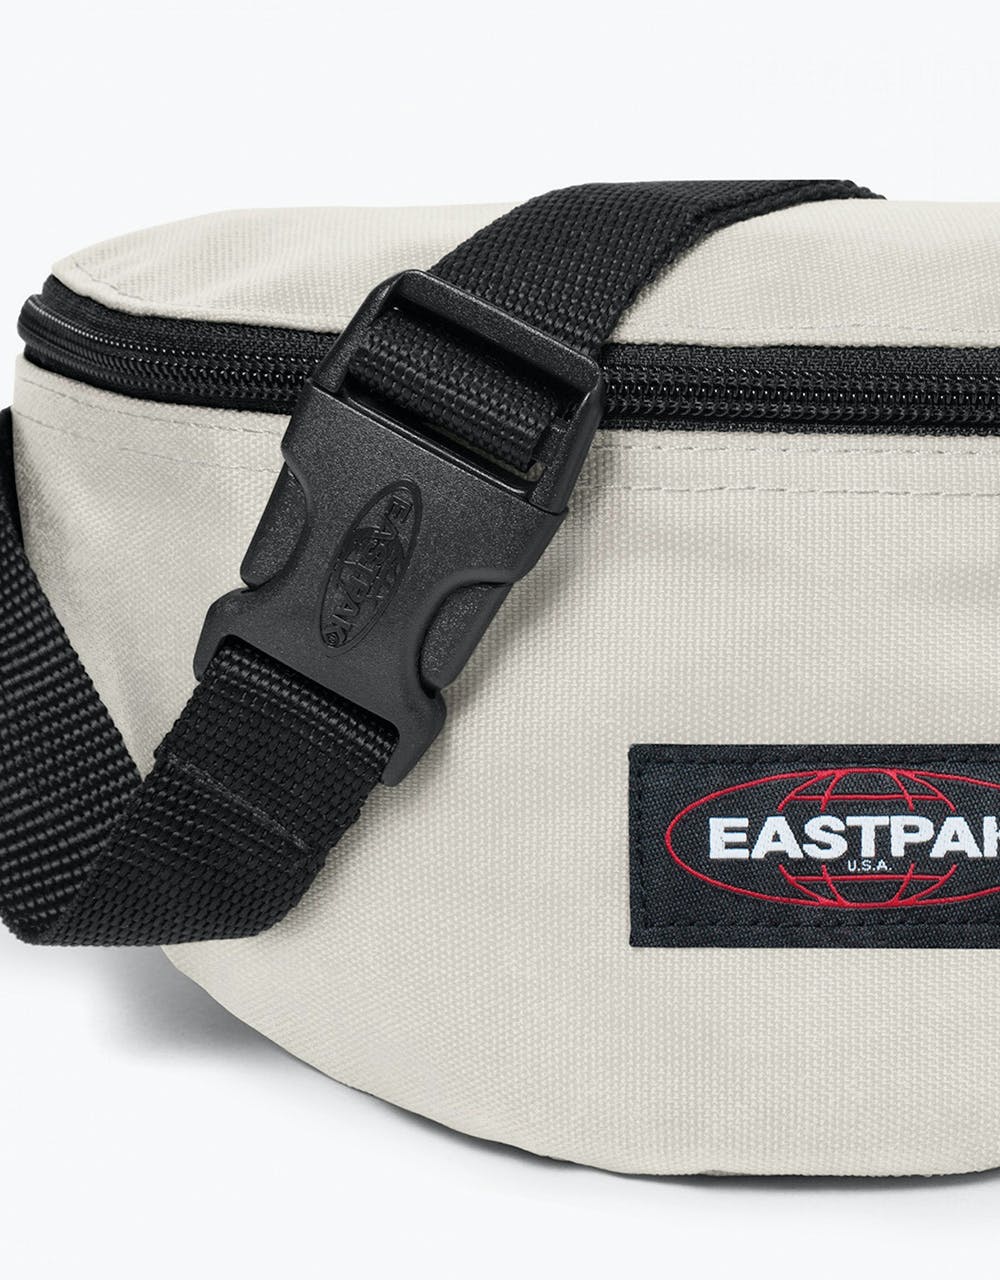 Eastpak Springer Cross Body Bag - Pearl White